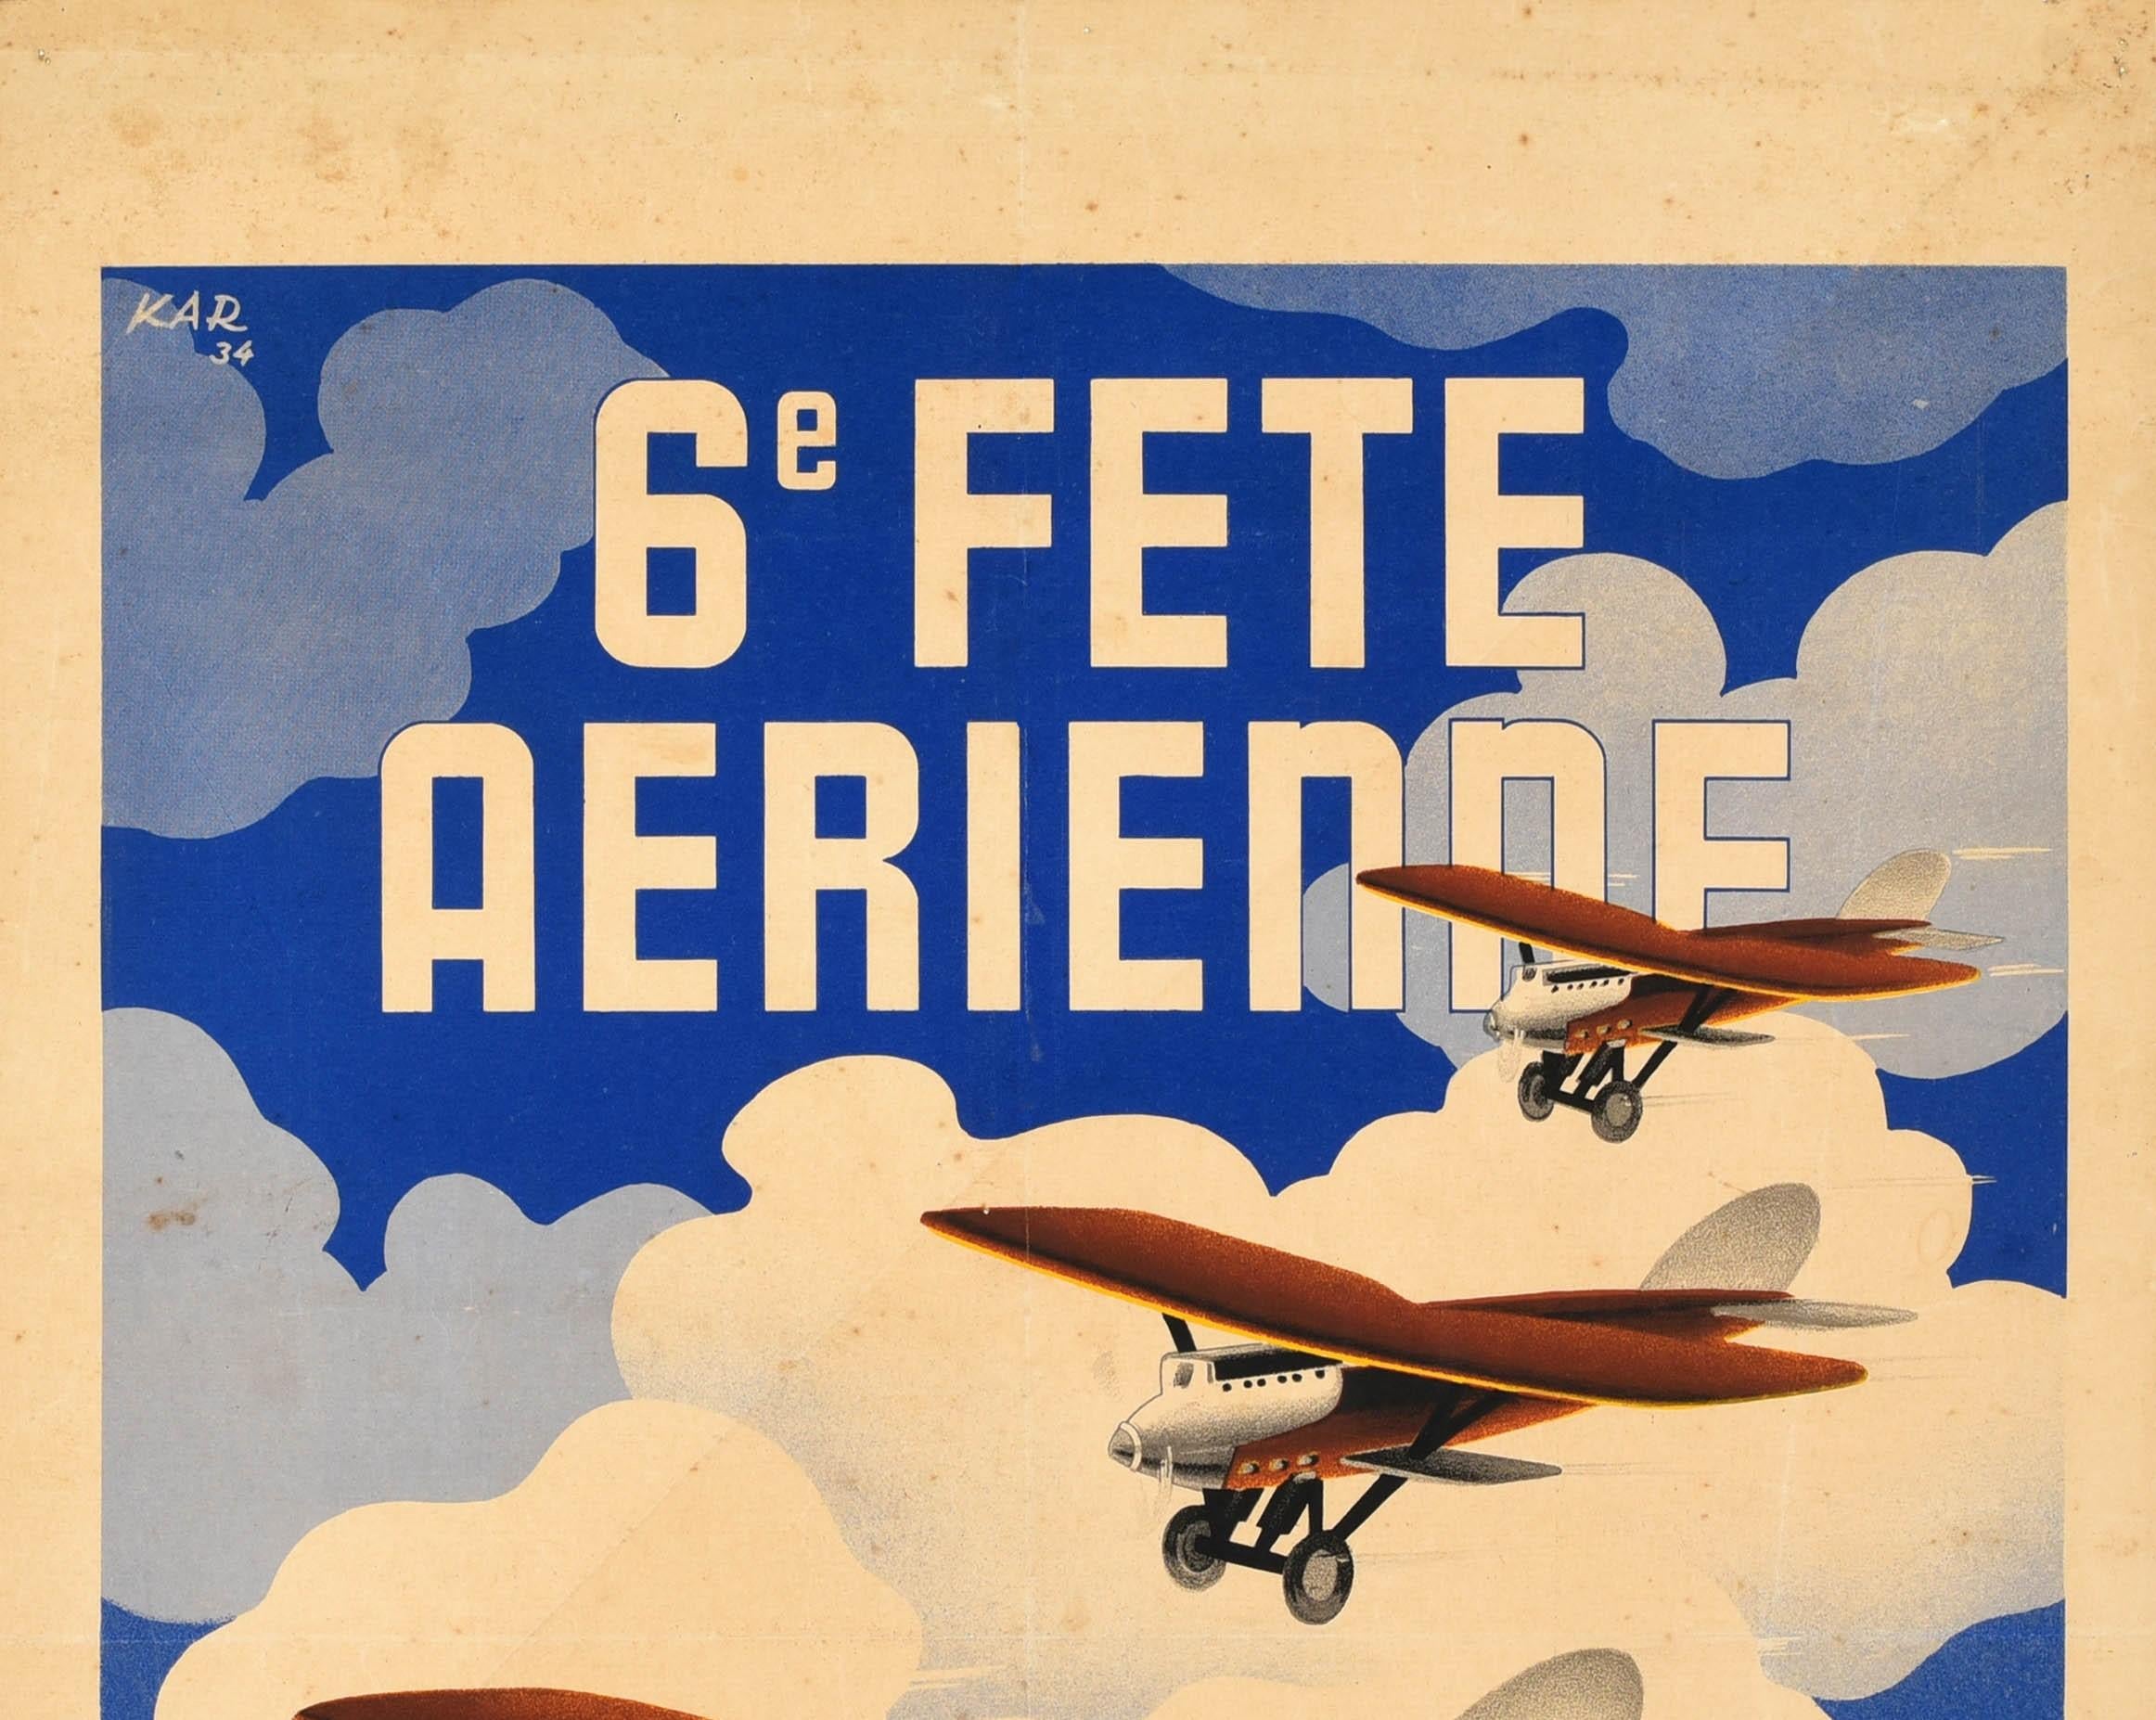 Affiche originale de sport aérien vintage annonçant la 6e Fete Aerienne / 6th Air Festival à Vincennes Paris les 20-21 mai 1934. Superbe design représentant trois avions à hélices volant en formation devant un fond de ciel nuageux, le texte en gras